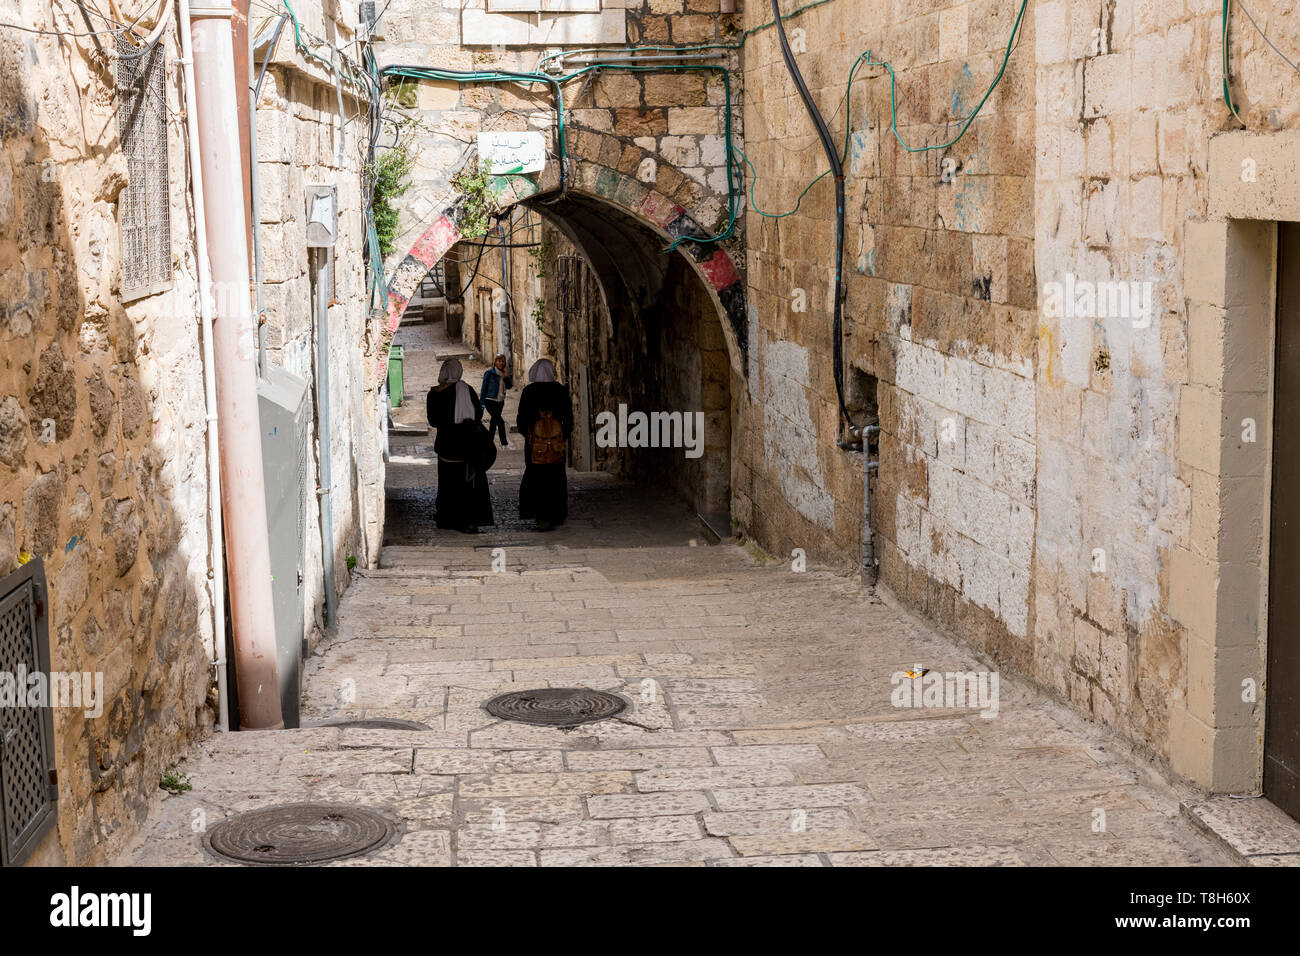 Jerusalén, Israel,27-Marzo-2019:girls,caminando por la ciudad vieja de Jerusalén, la ciudad vieja se divide en cuatro trimestres. Foto de stock